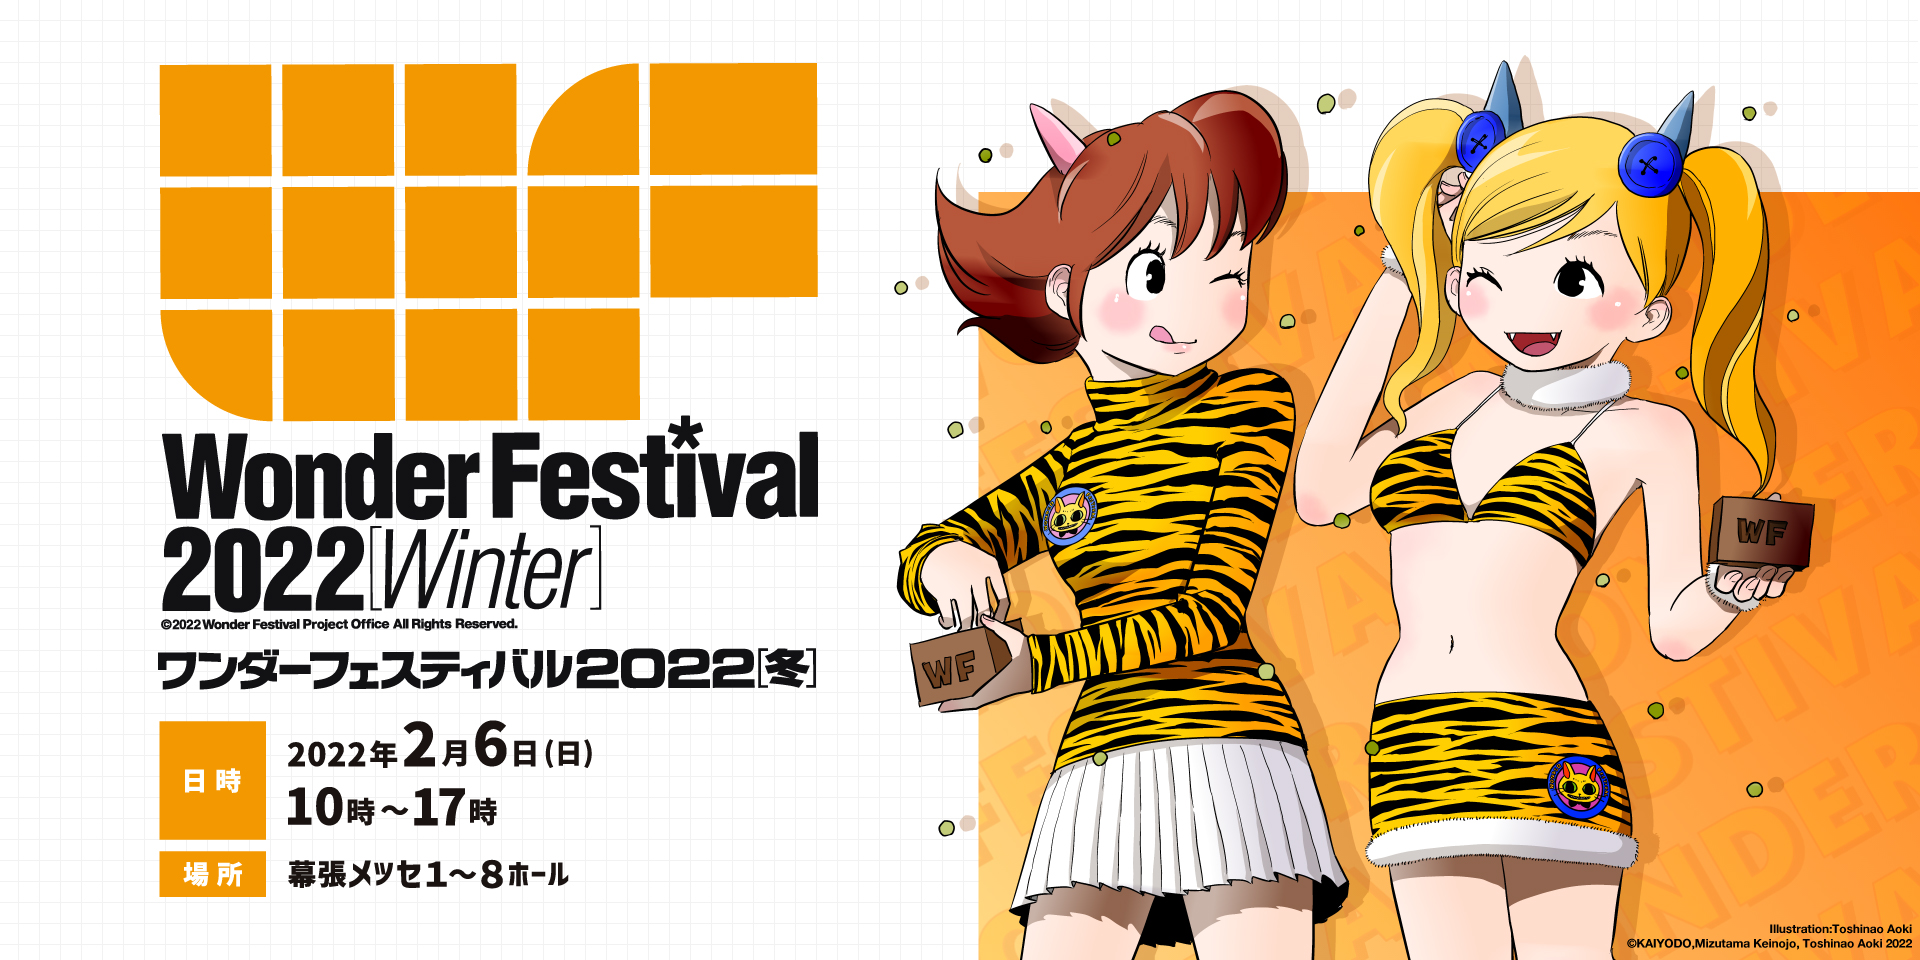 Wonder Festival 2022 Winter